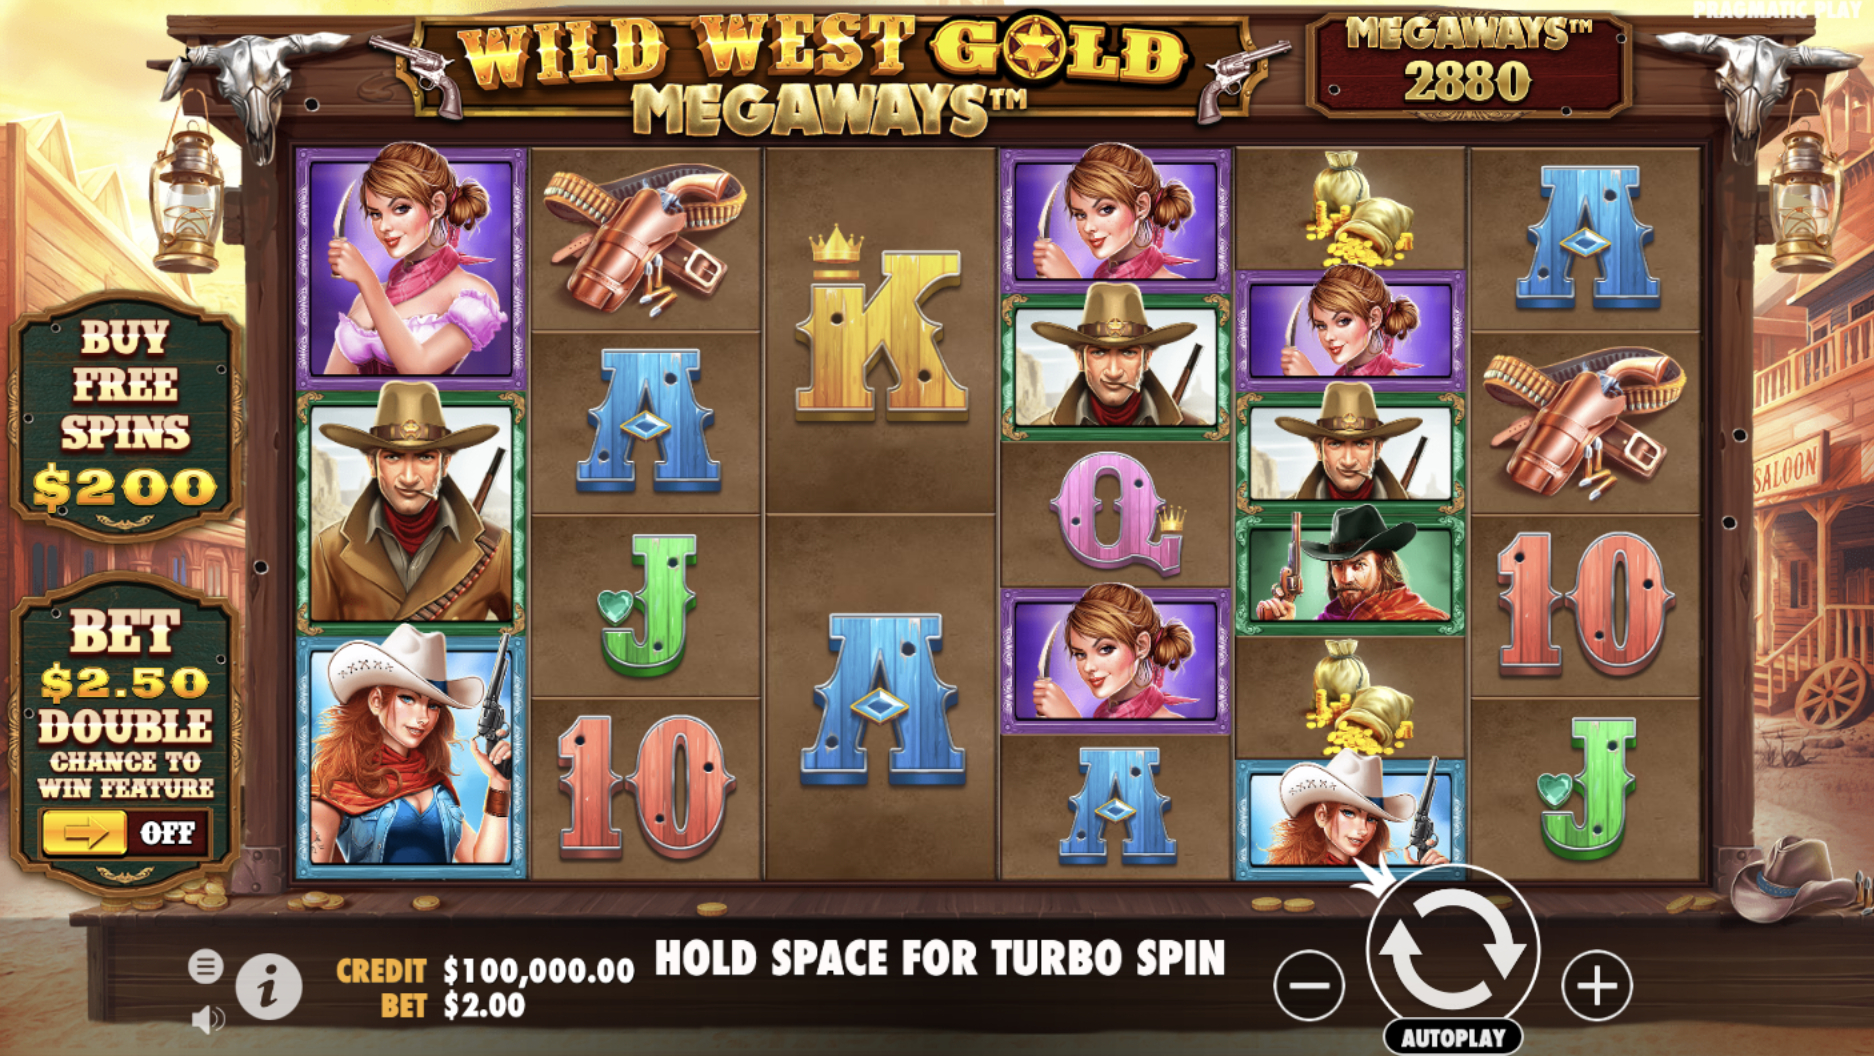 Wild West Gold Megaways Casino Game